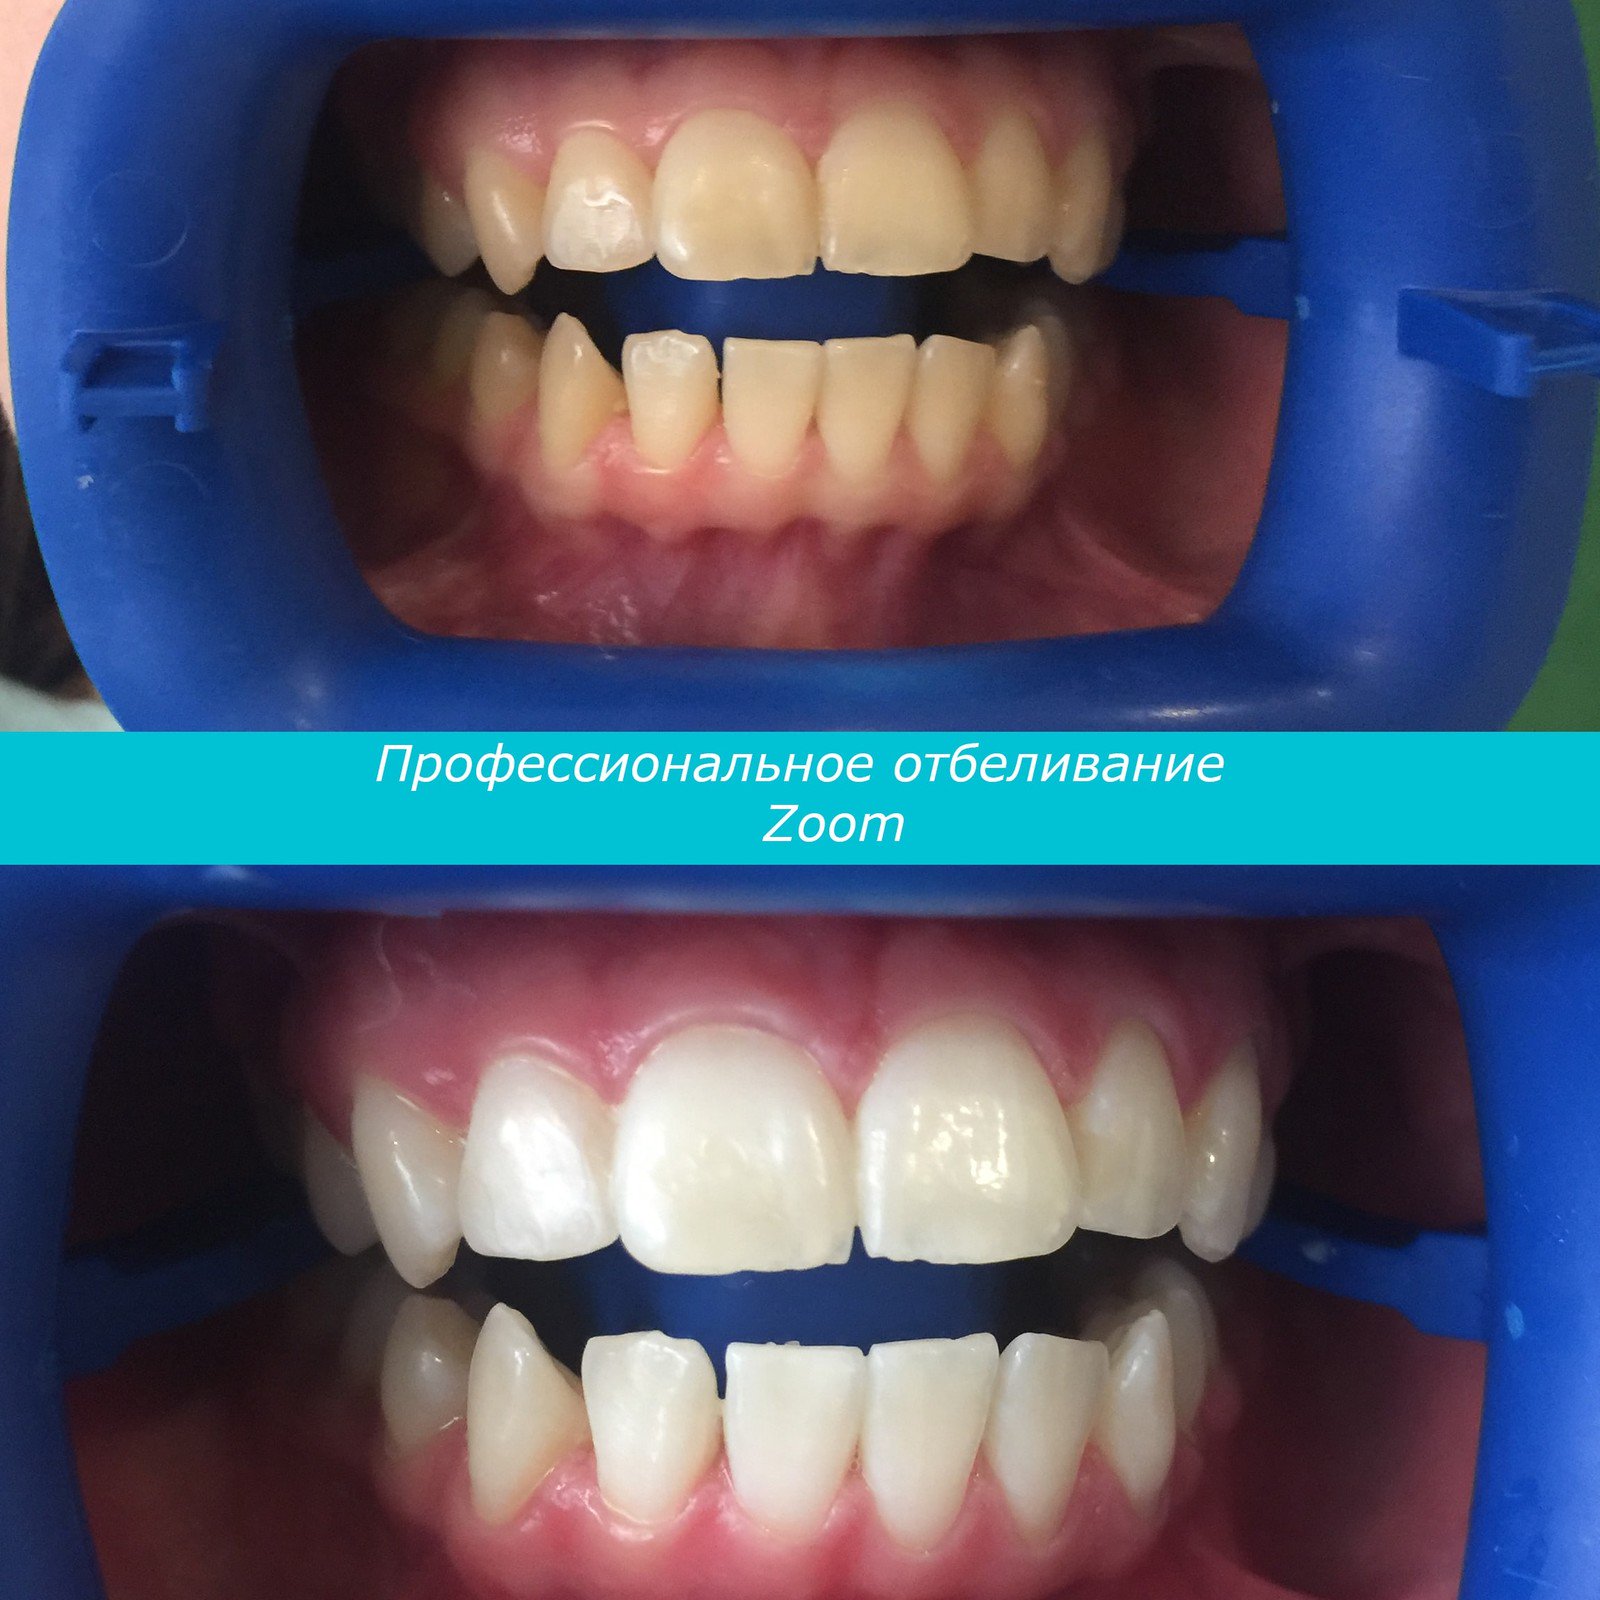 Лазерное отбеливание отзывы. Зубы до и после отбеливания.